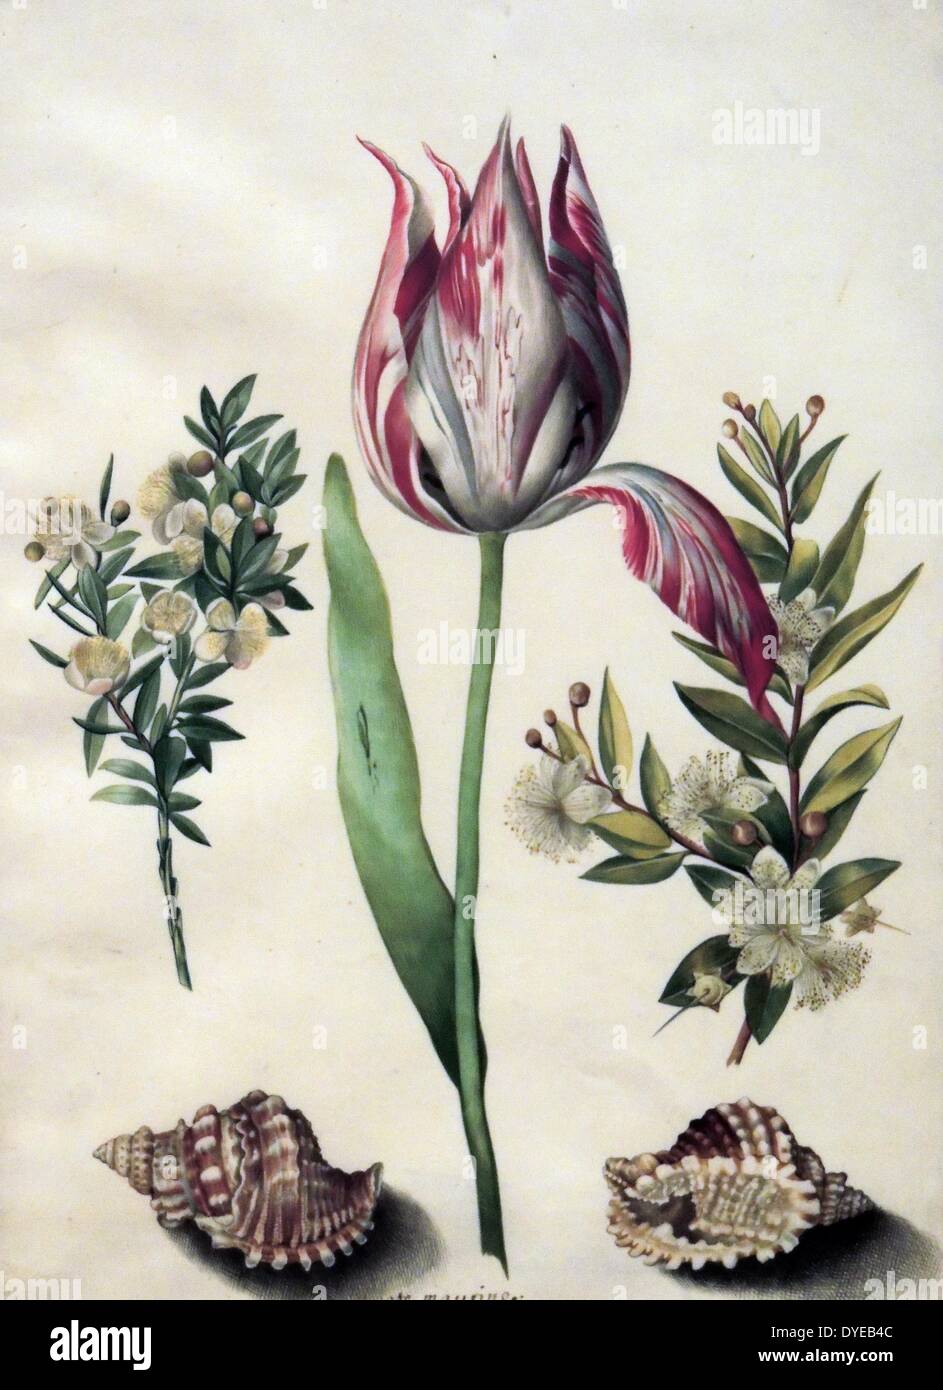 Eine Tulpe, die zwei Federn der Myrte und zwei Muscheln von Maria Sibylla Merian (1647-1717) Aquarell auf Pergament, c 1670-1680. Als Tochter eines Künstlers, Maria Sibylla Berian erlernte an einem frühen Alter zu zeichnen. Wie so viele Künstlerinnen damals, wählte sie Blumen und Insekten als ihre Themen. Sie übertraf in ihrer Kunst - beobachtete sie Insekten, insbesondere der Schmetterlinge - in einer wissenschaftlichen Art und Weise, in der niederländischen Kolonie Surinam gereist und veröffentlicht Bücher in ihrer Arbeit untersuchen. Stockfoto